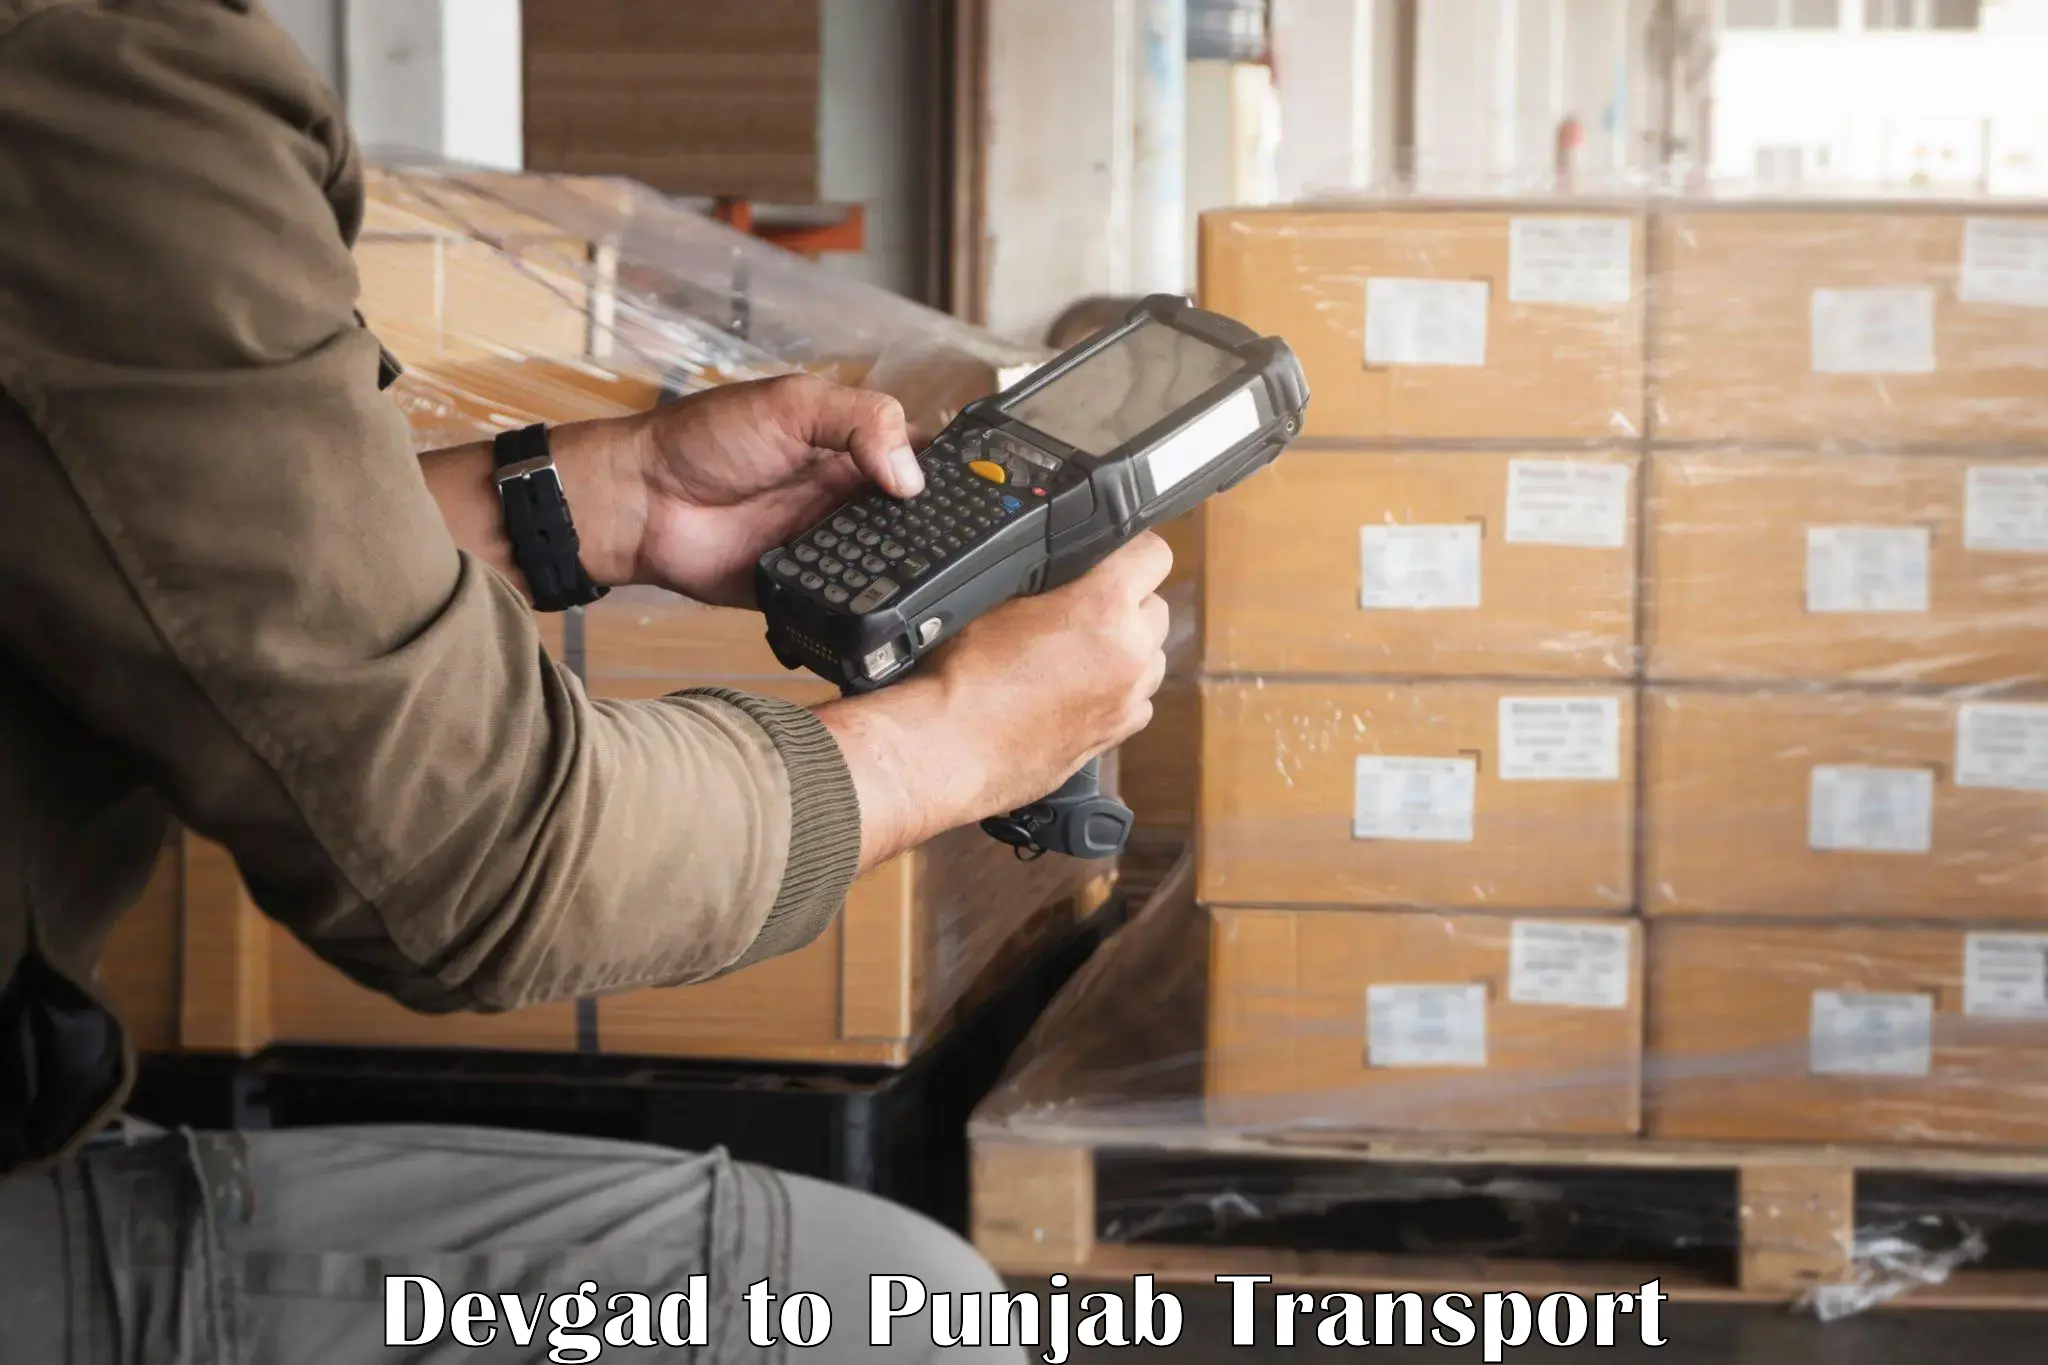 Container transport service Devgad to Jalandhar